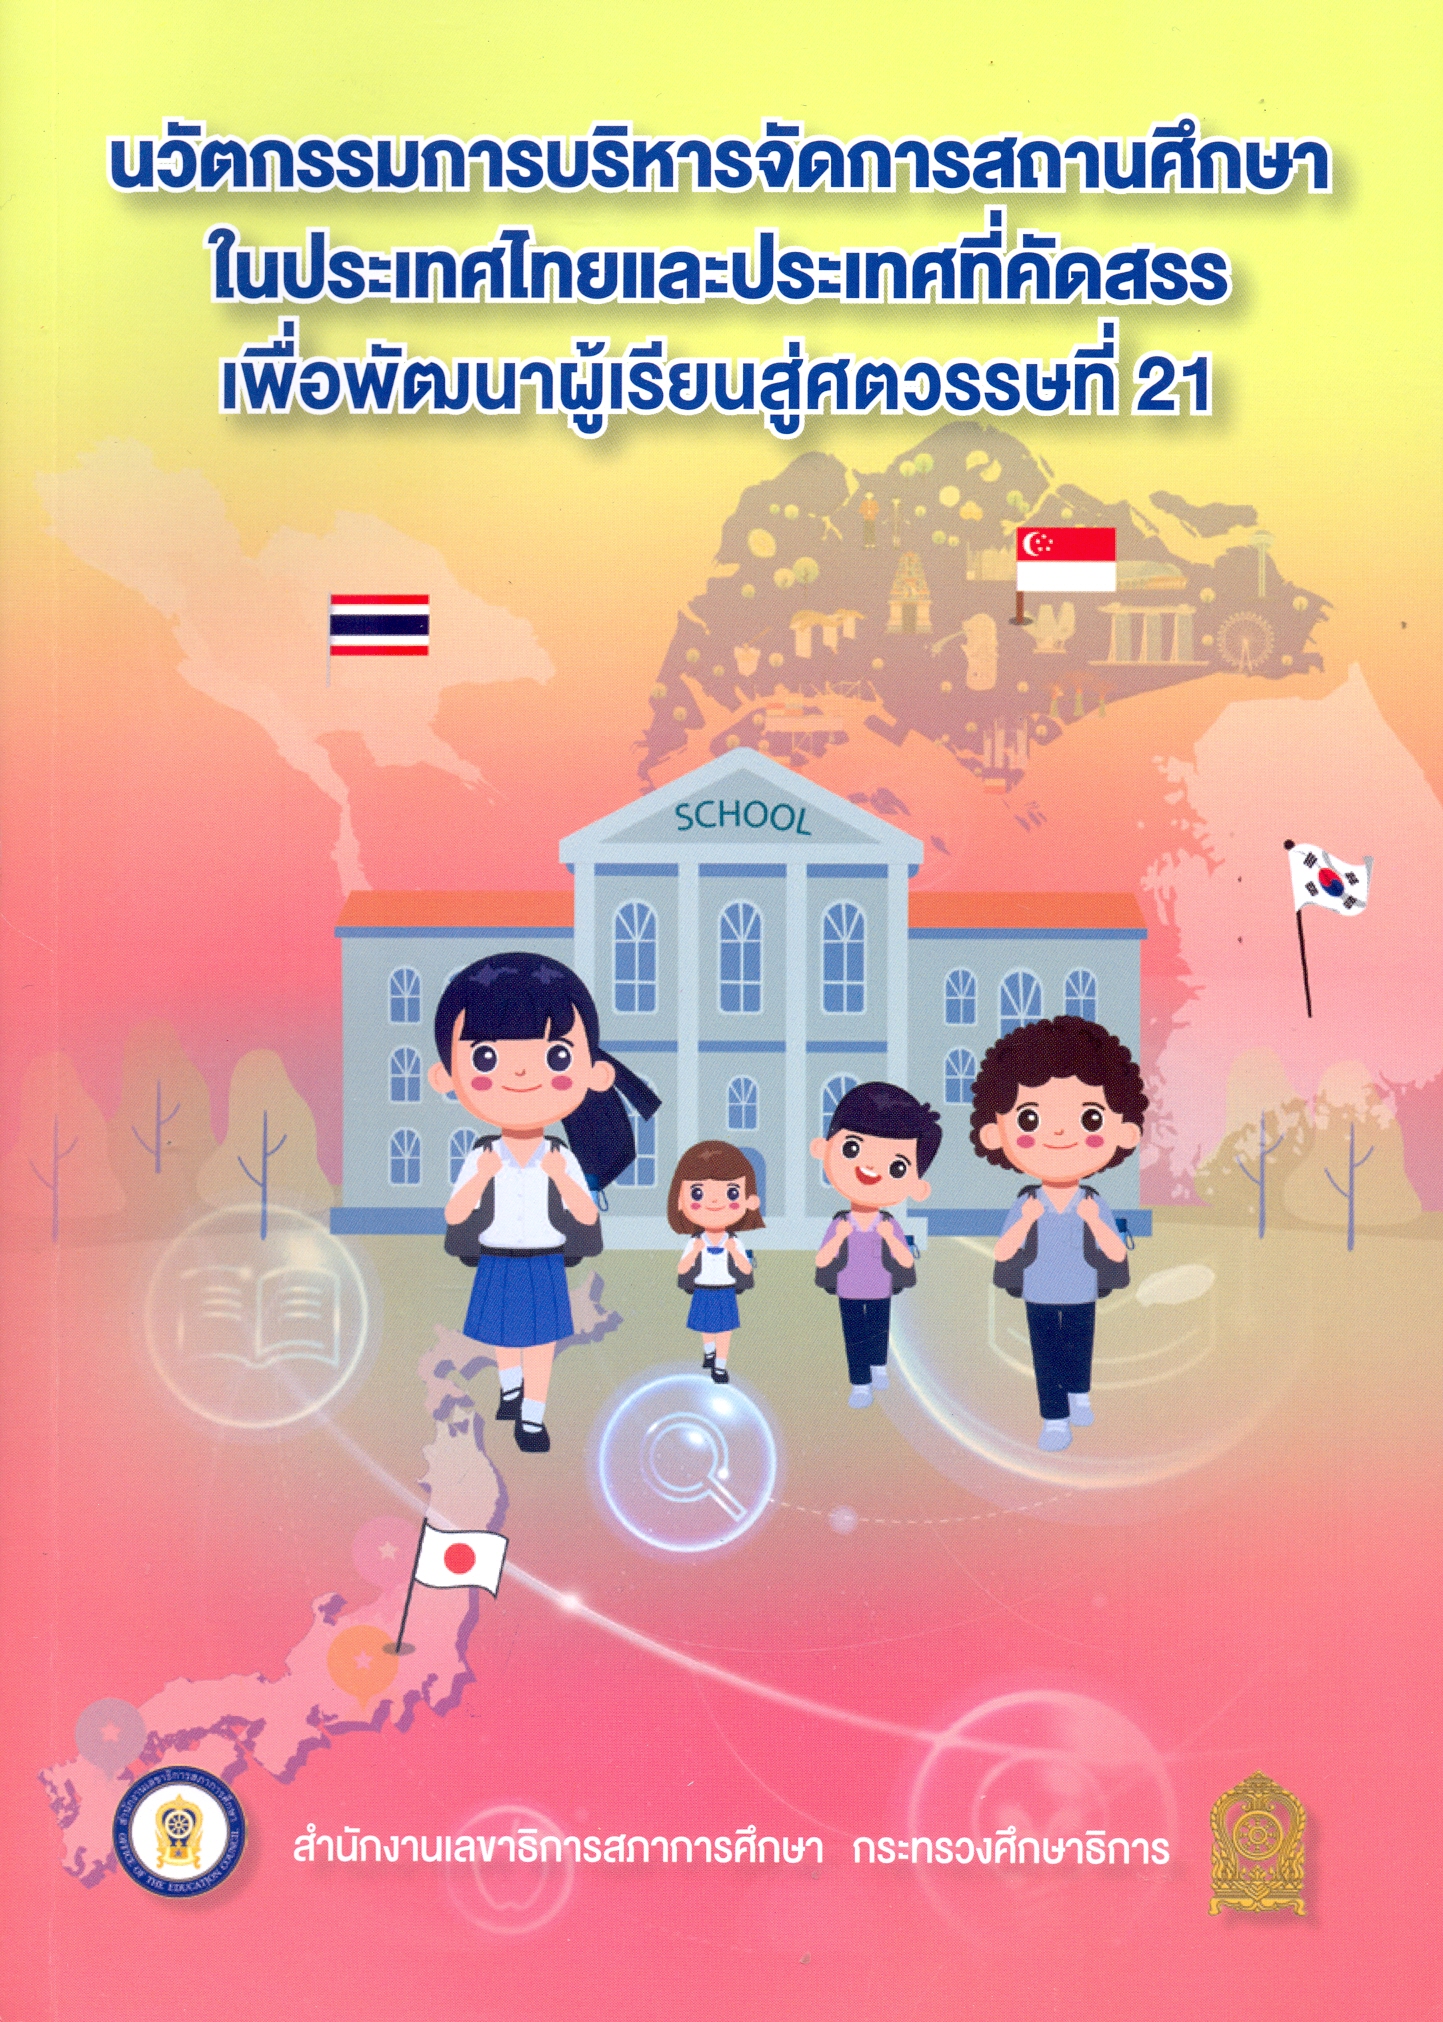 นวัตกรรมการบริหารจัดการสถานศึกษาในประเทศไทยและประเทศที่คัดสรรรเพื่อพัฒนาผู้เรียนสู่ศตวรรษที่ 21